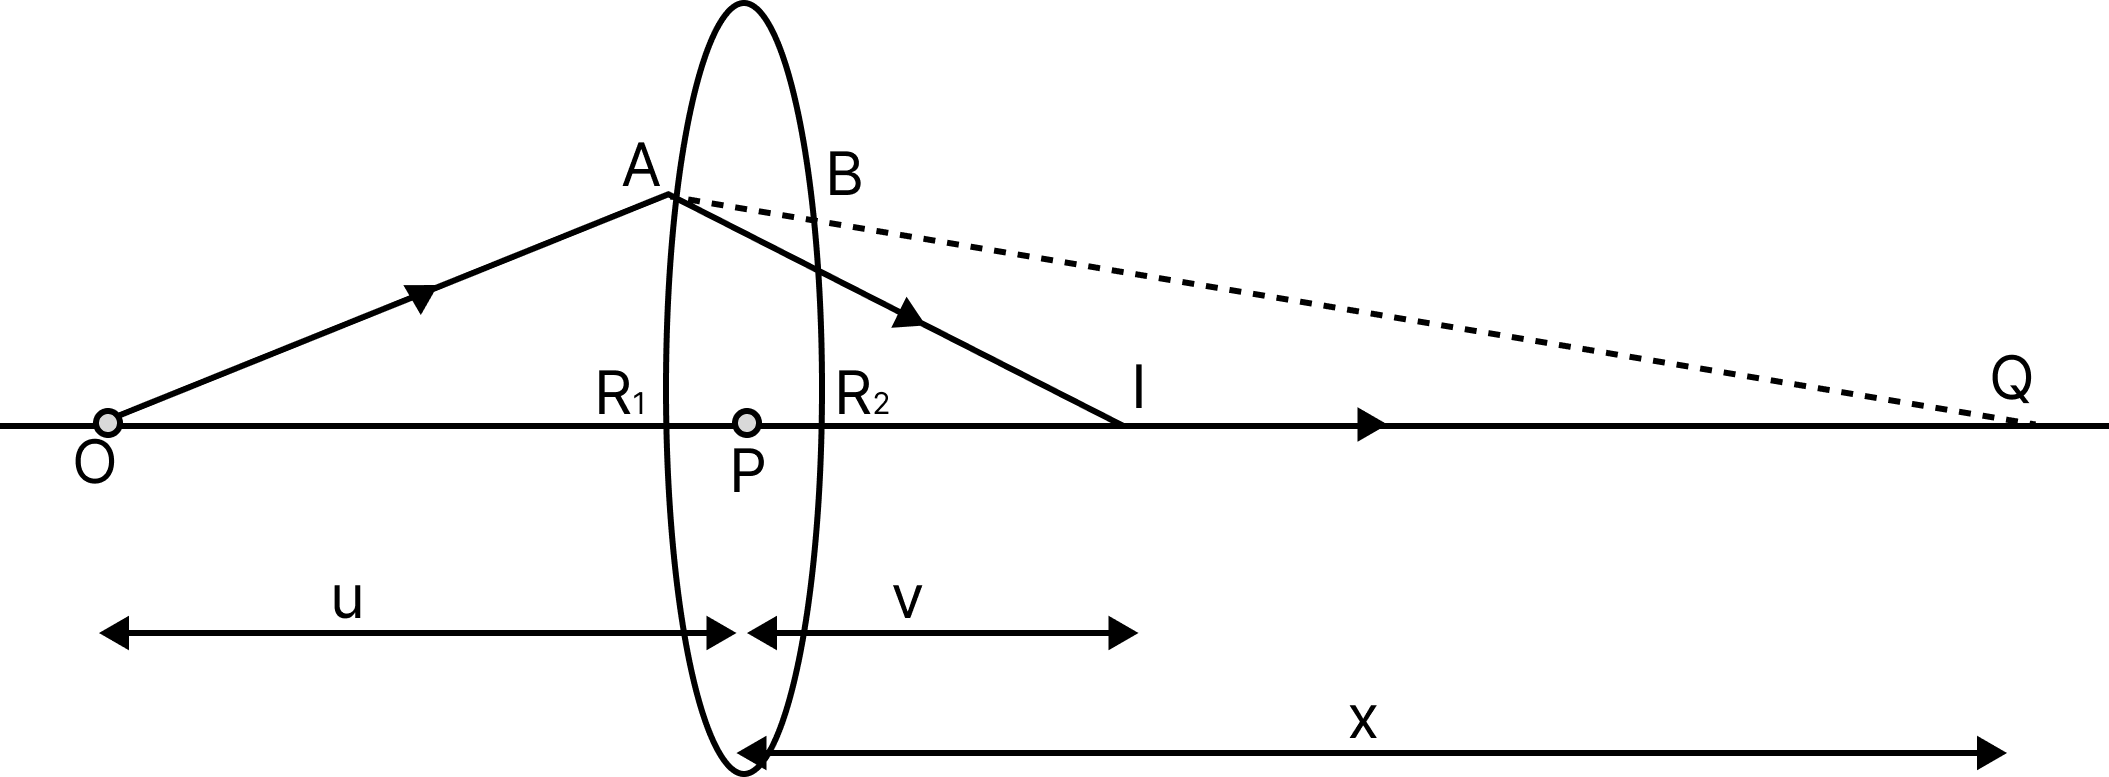 Lens maker’s equation ray diagram for a bi-convex lens